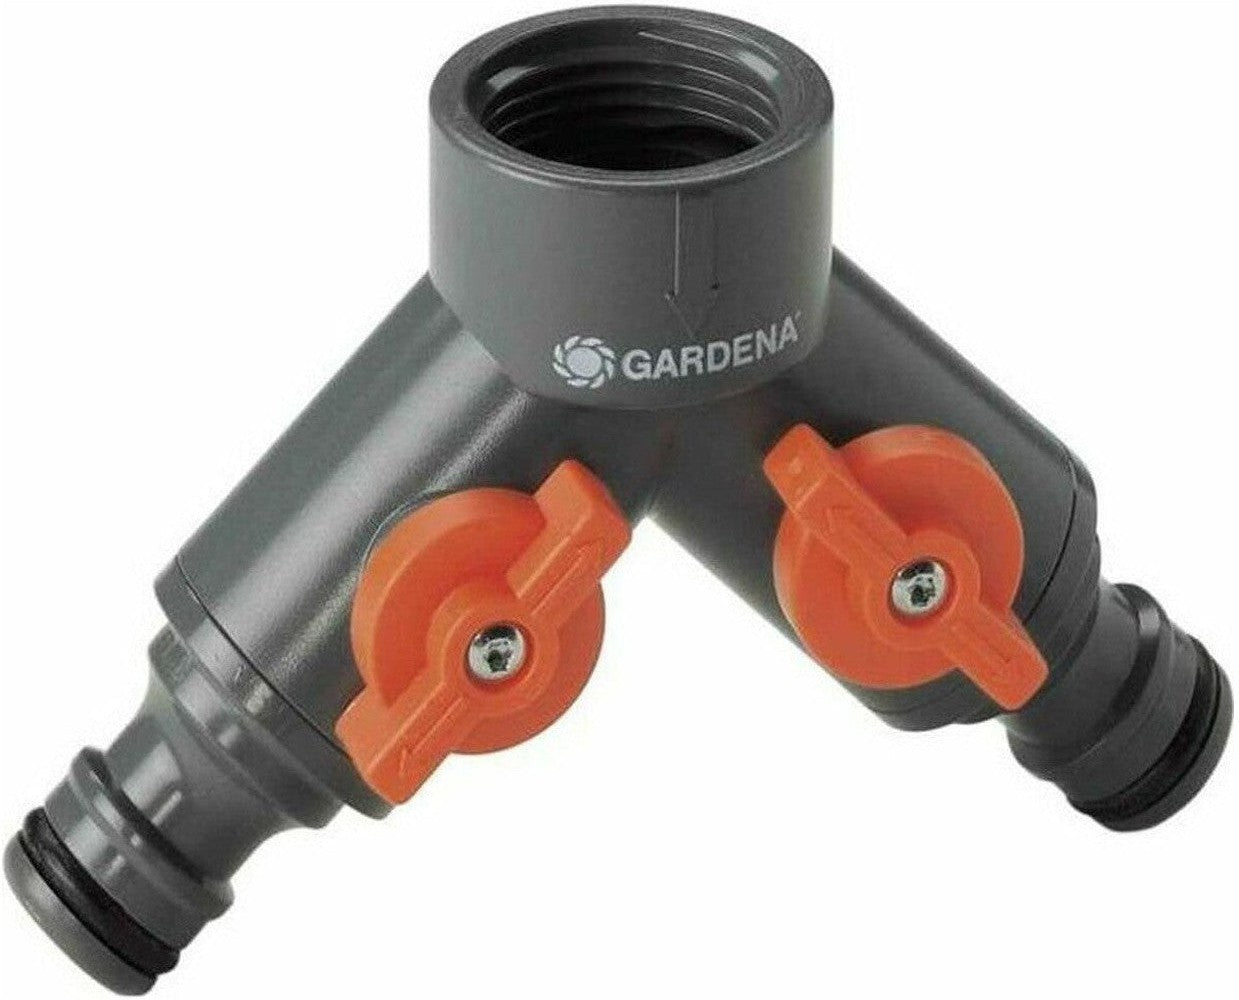 Connector Gardena 940-26 Double